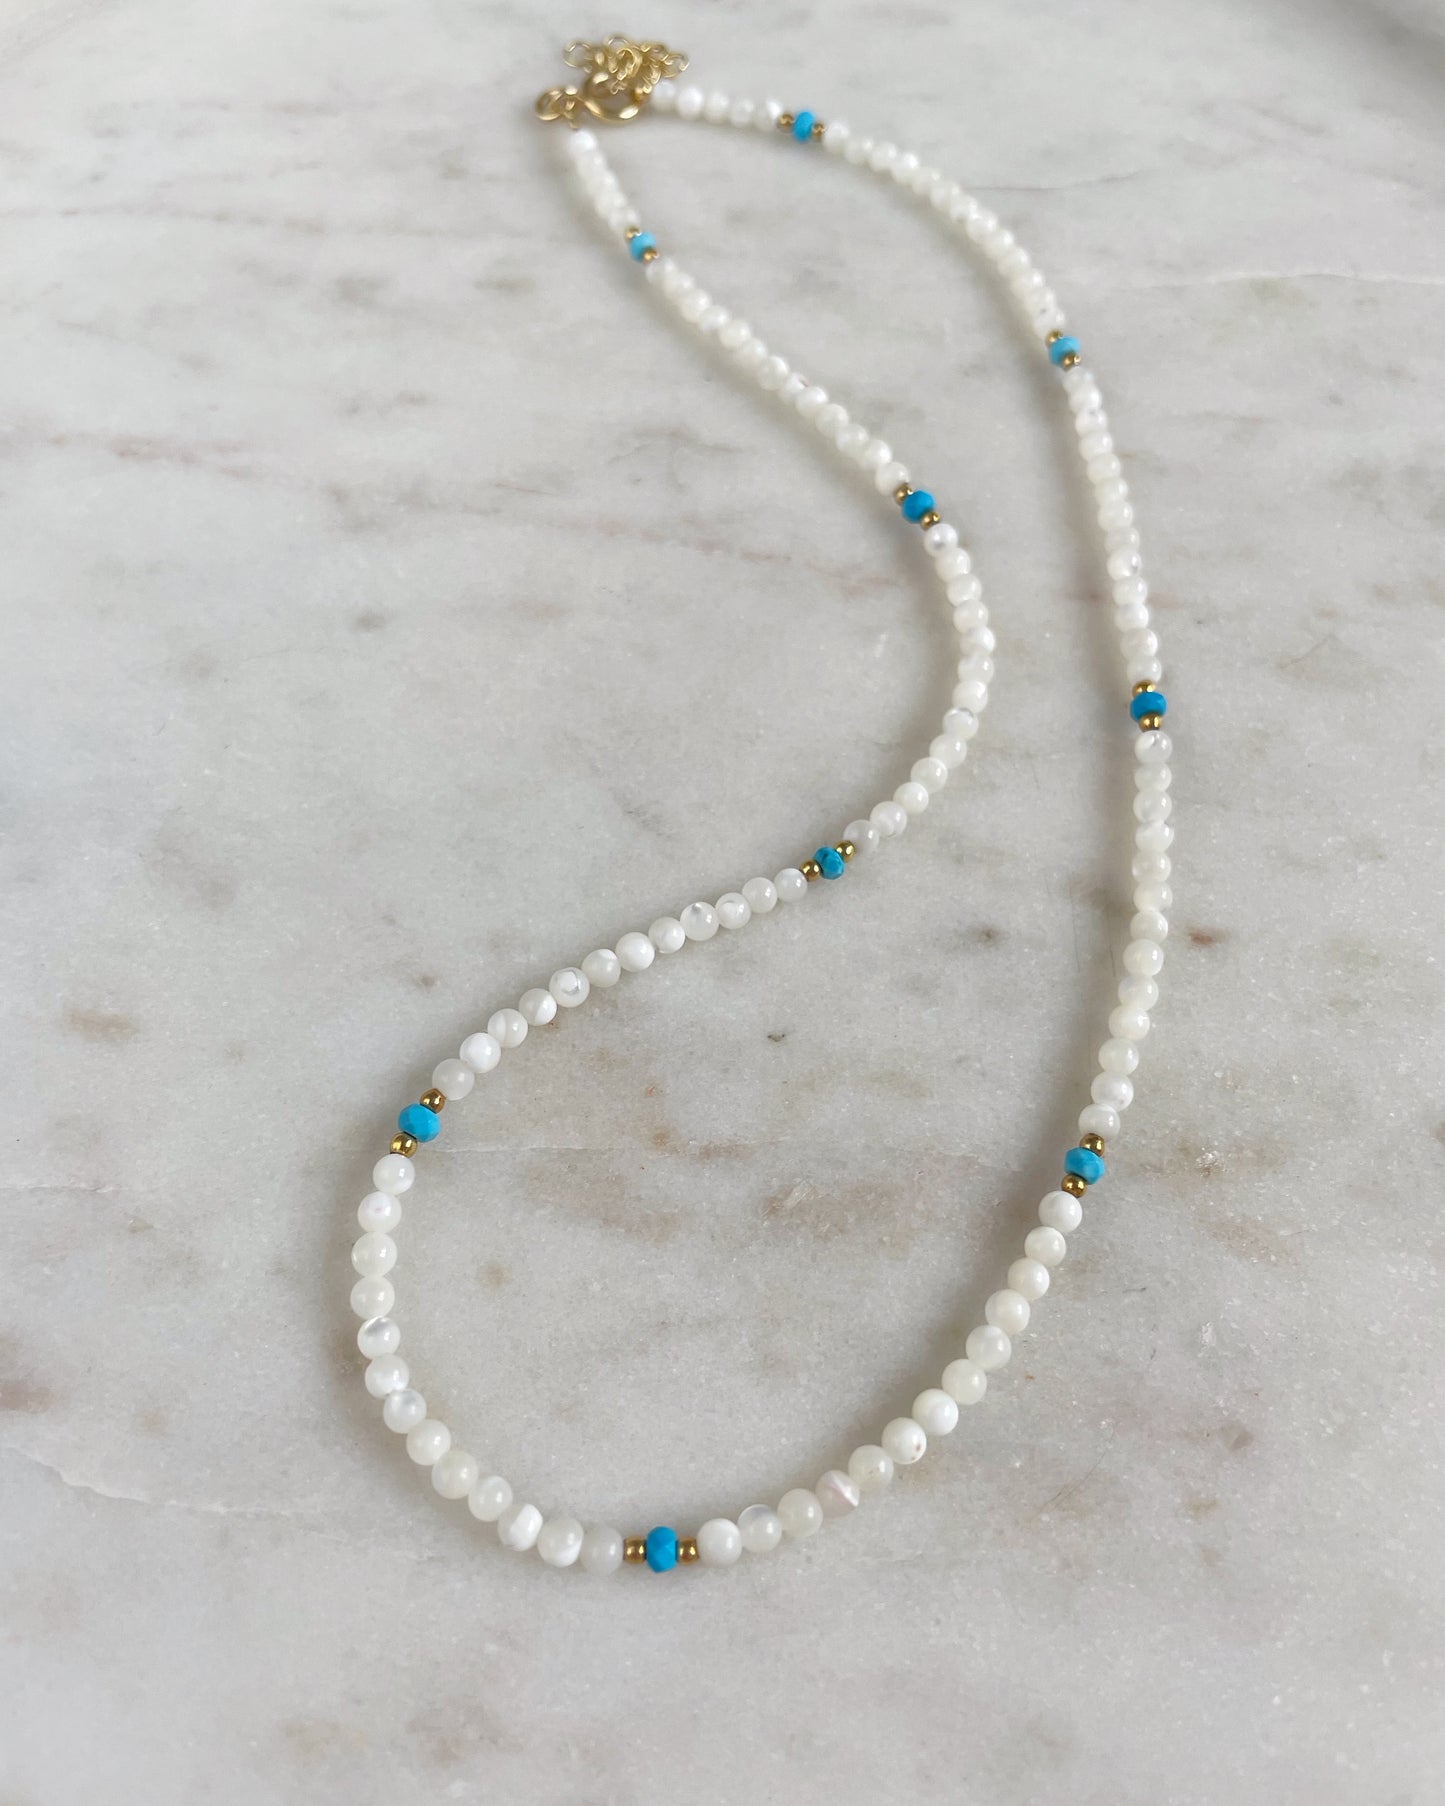 Santorini necklace